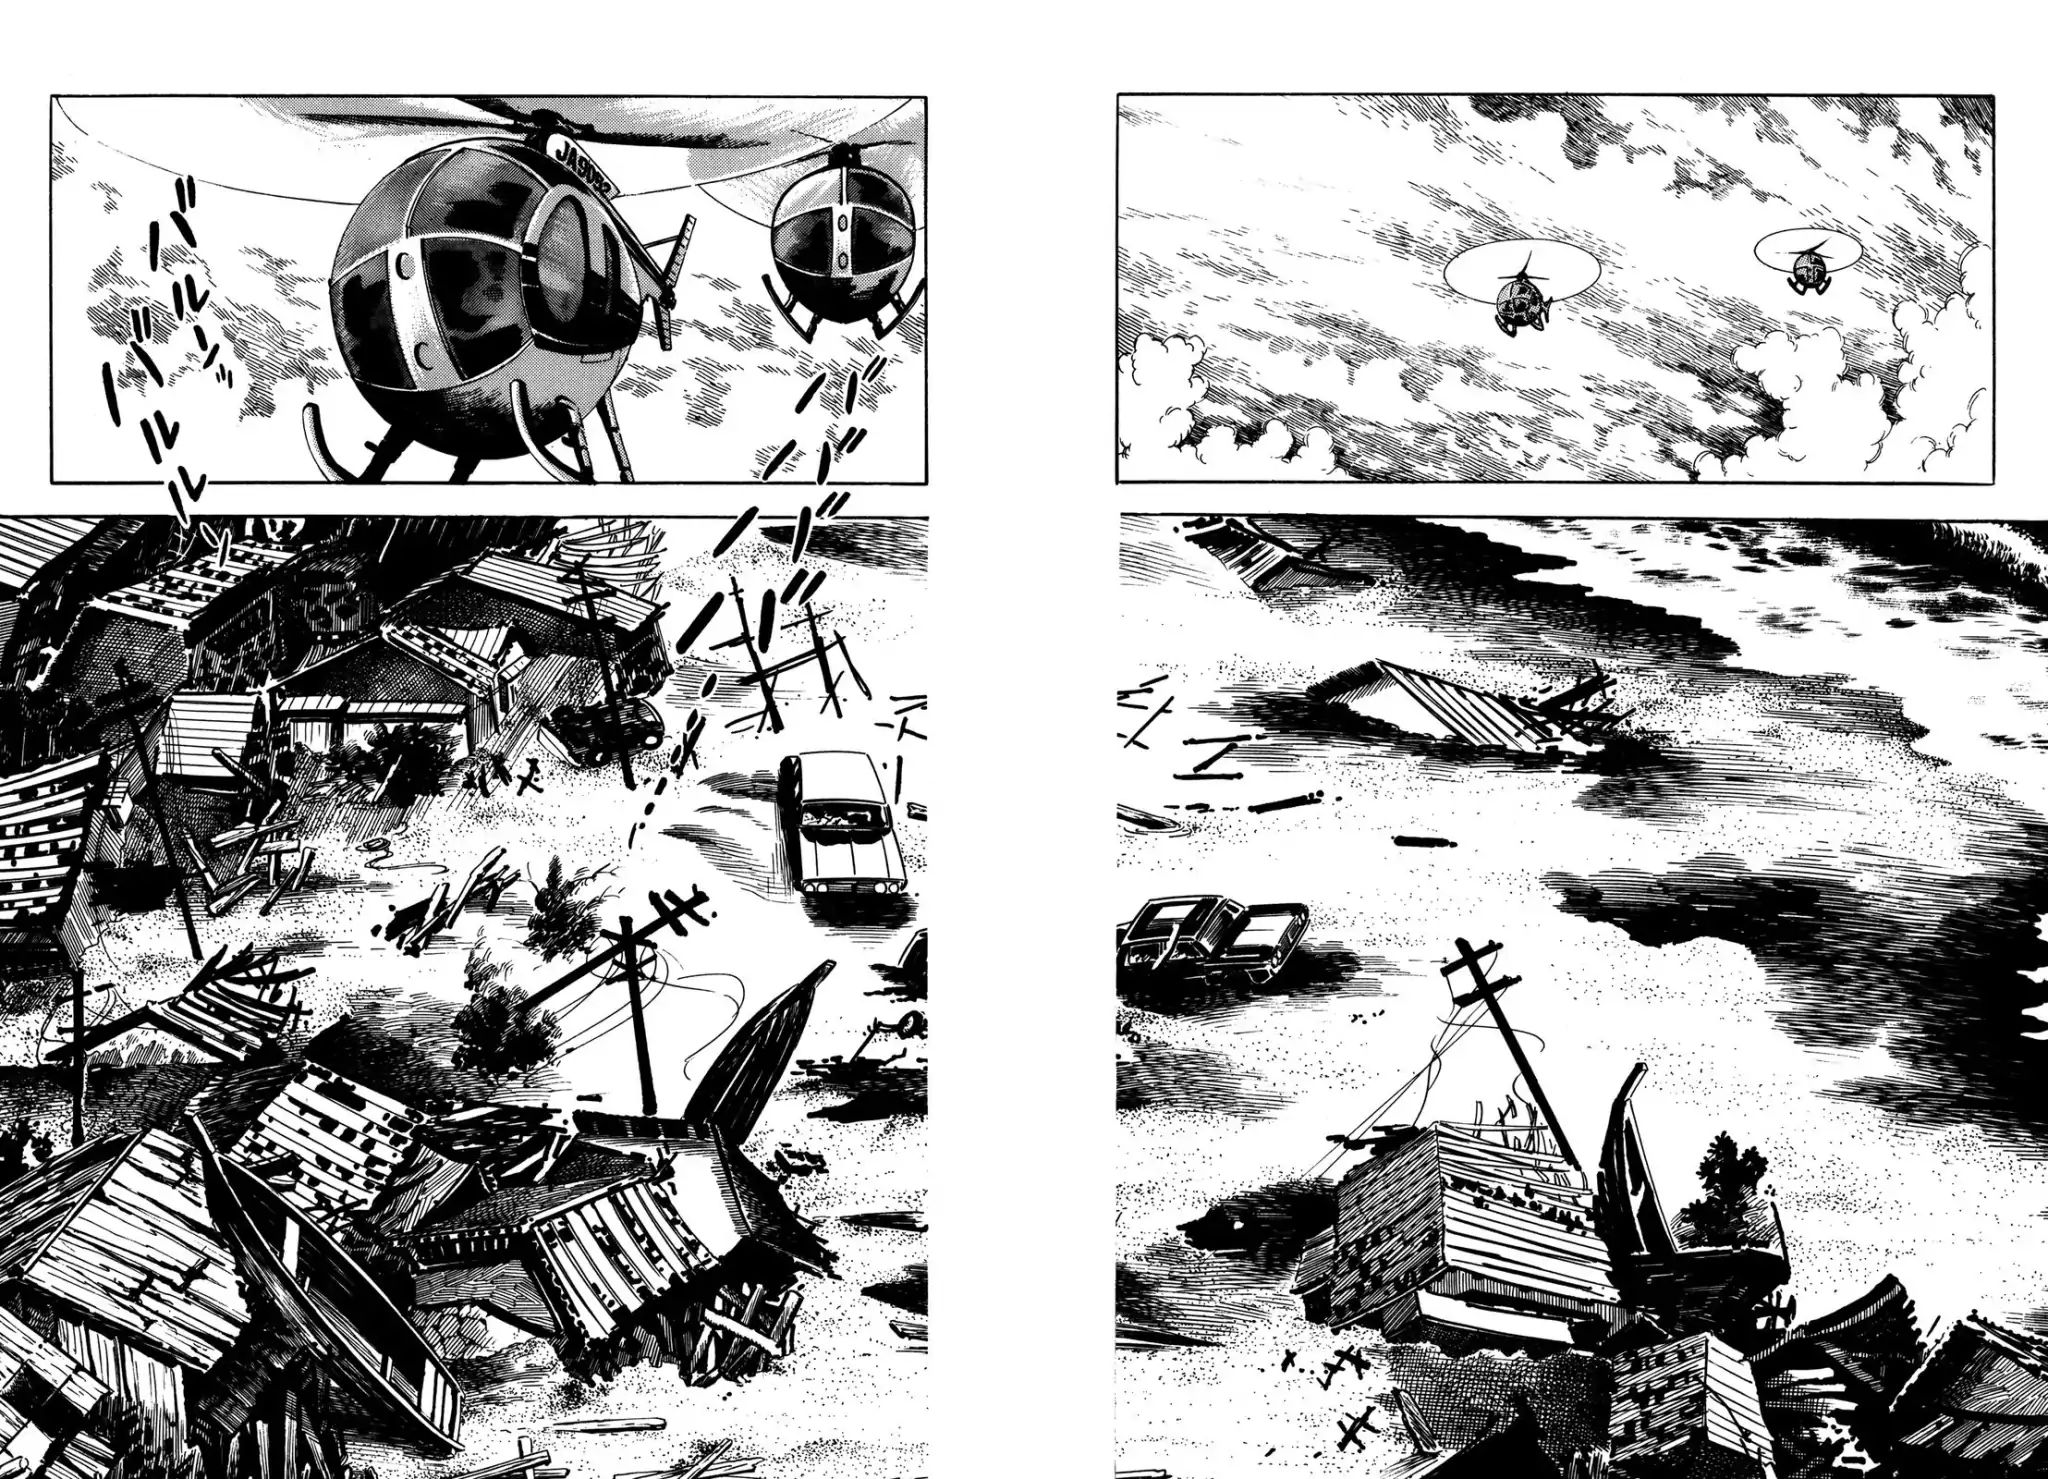 Japan Sinks (Takao Saito) Vol.2 Chapter 3: Plan D